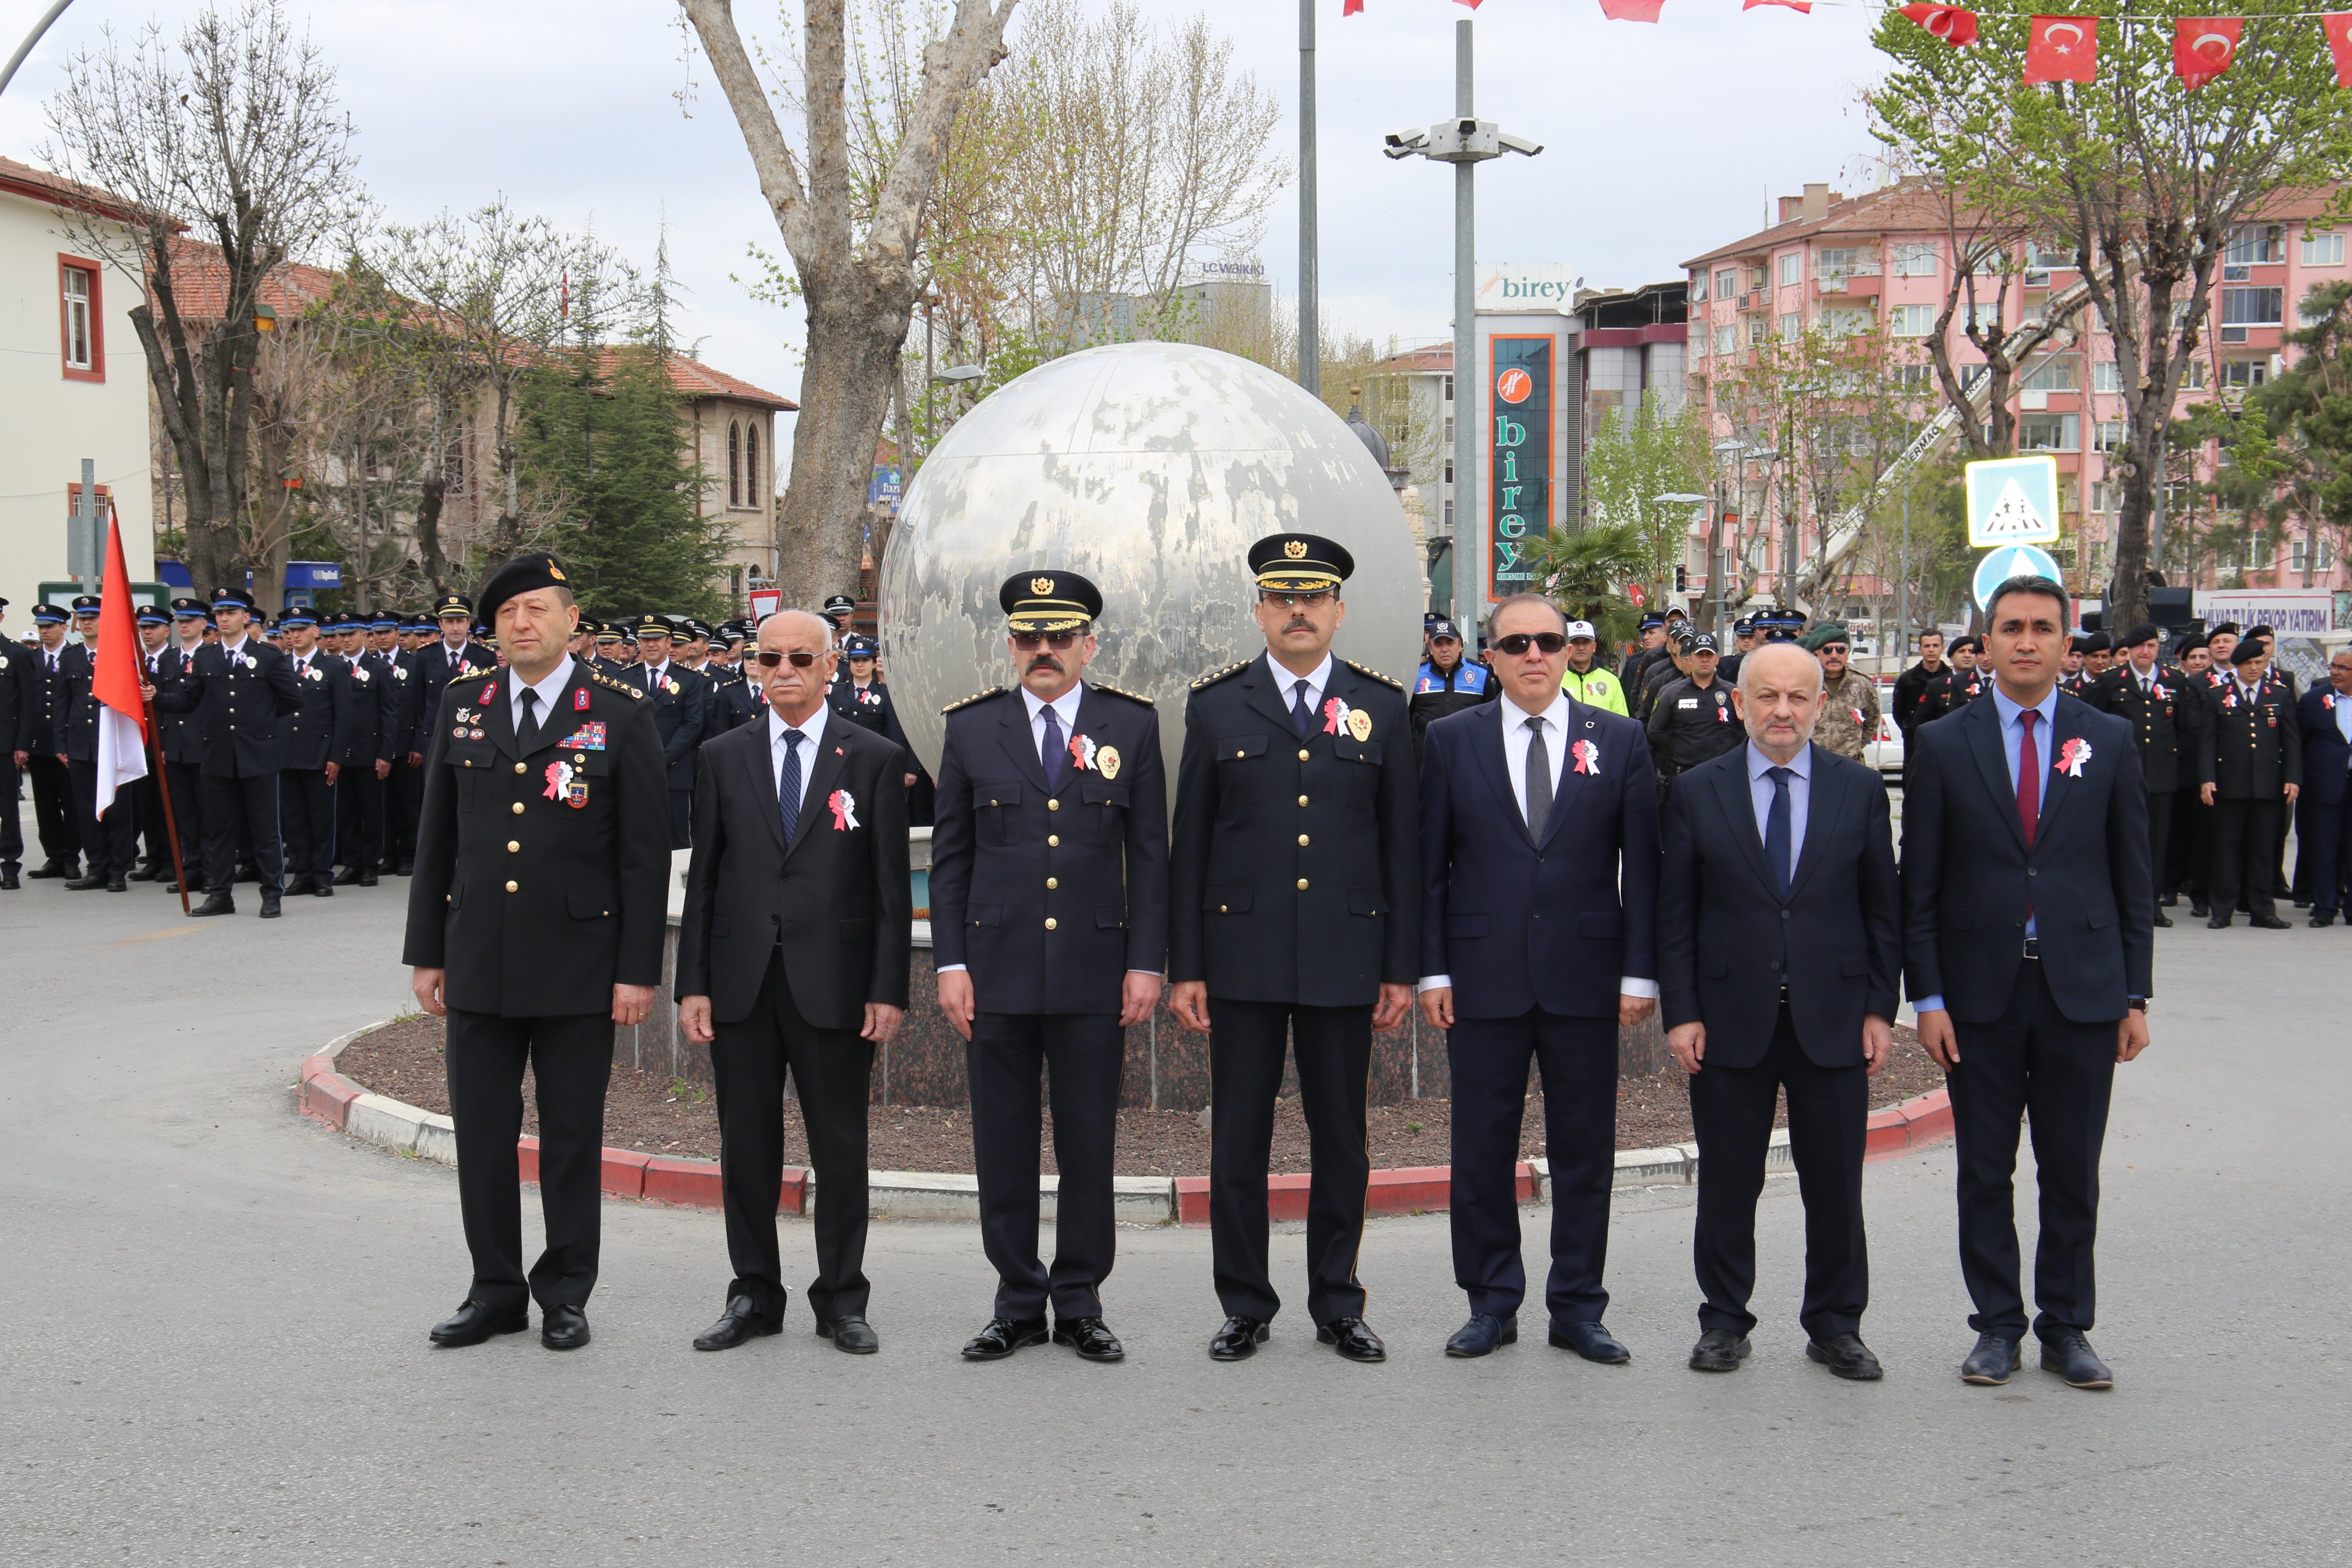 Türk Polis Teşkilatı'nın 177. kuruluş yıl dönümü münasebetiyle Malatya'da Atatürk Anıtı'nda tören düzenlendi.